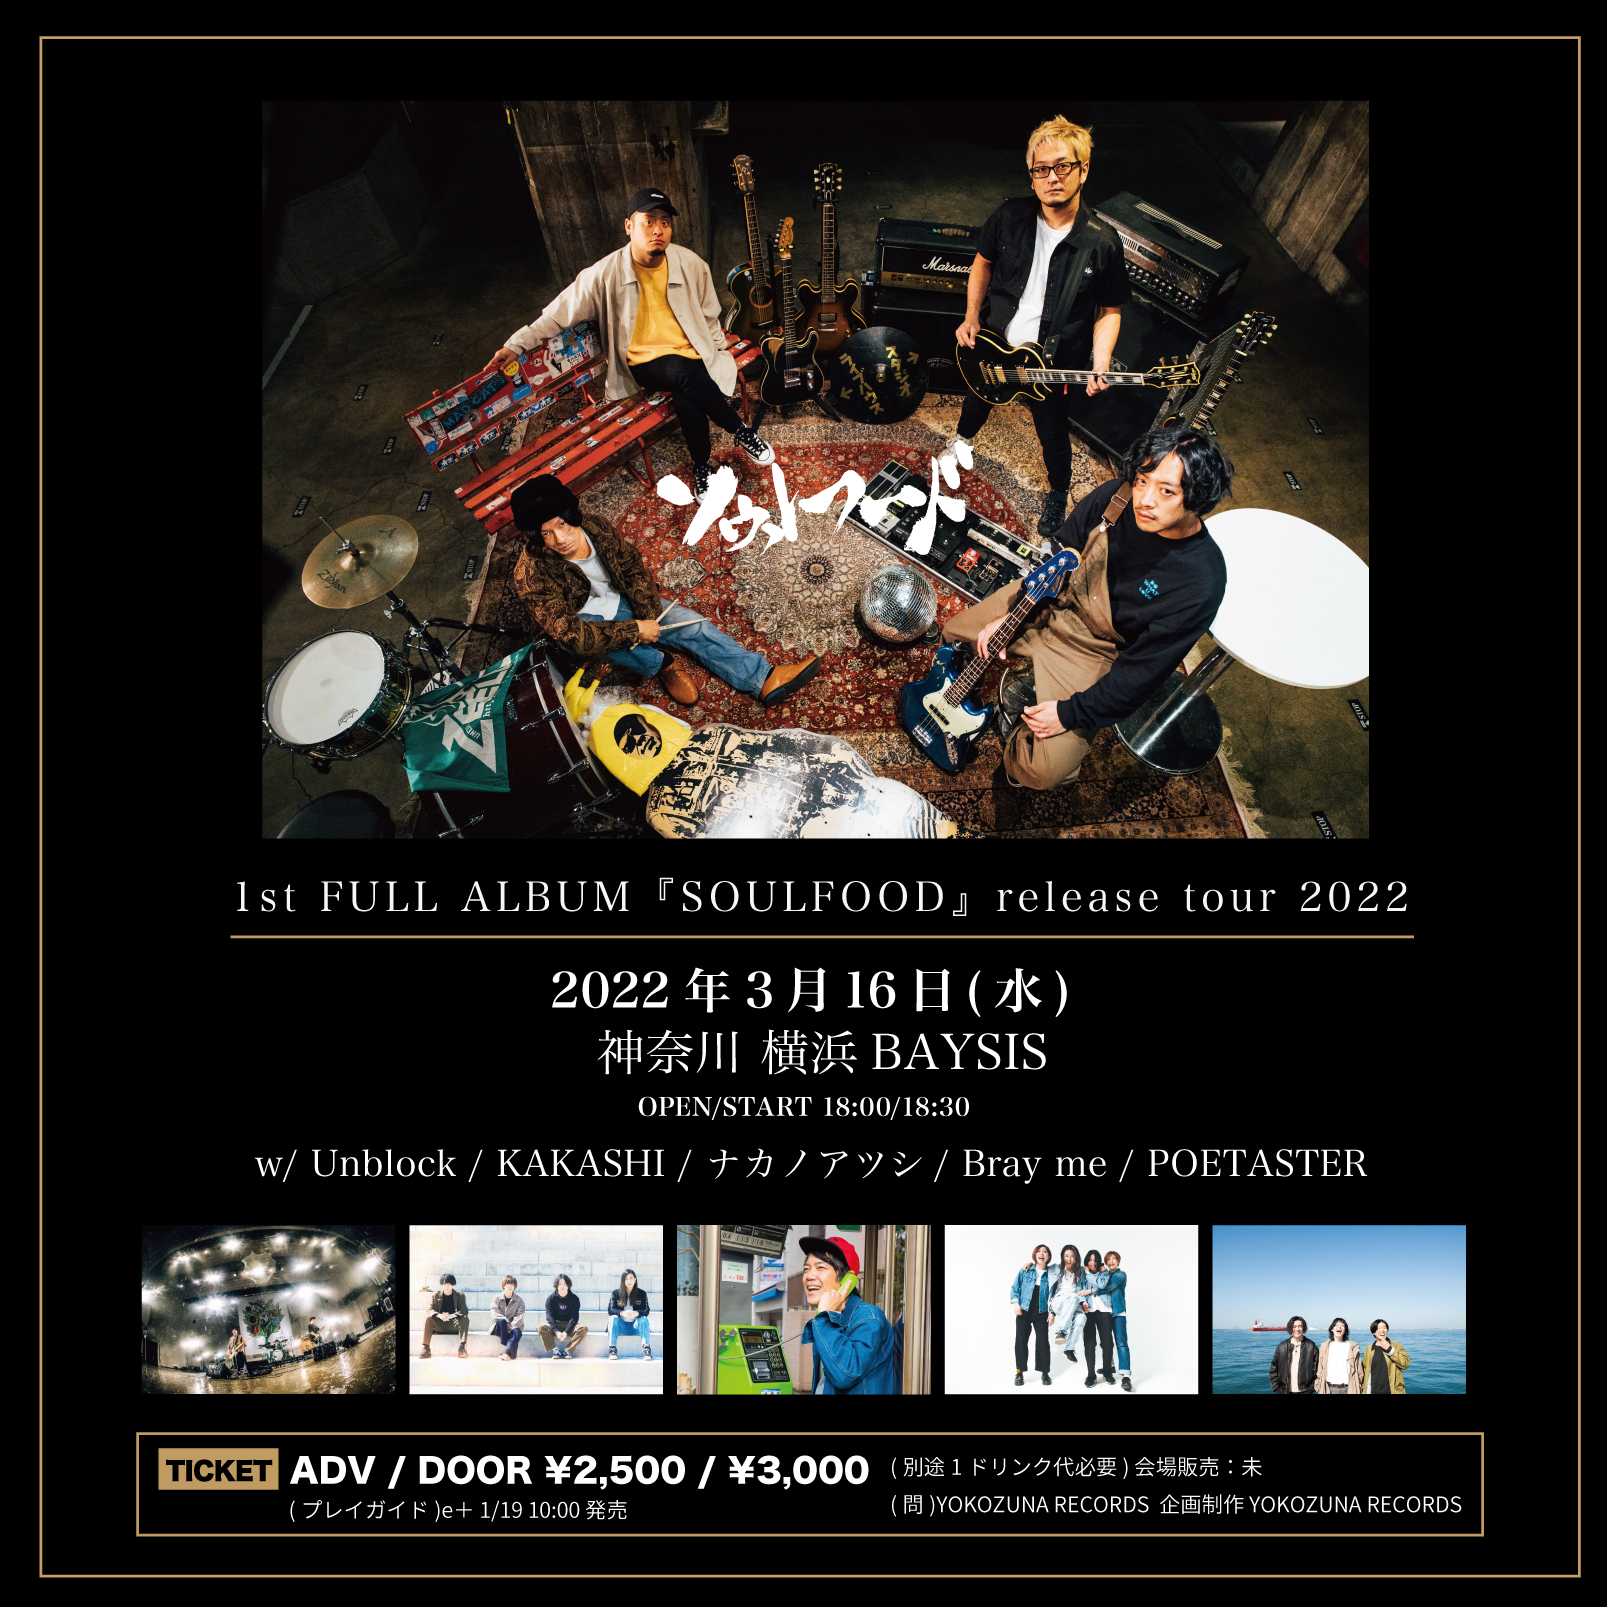 ソウルフード 1st full album “SOULFOOD” release tour 2022